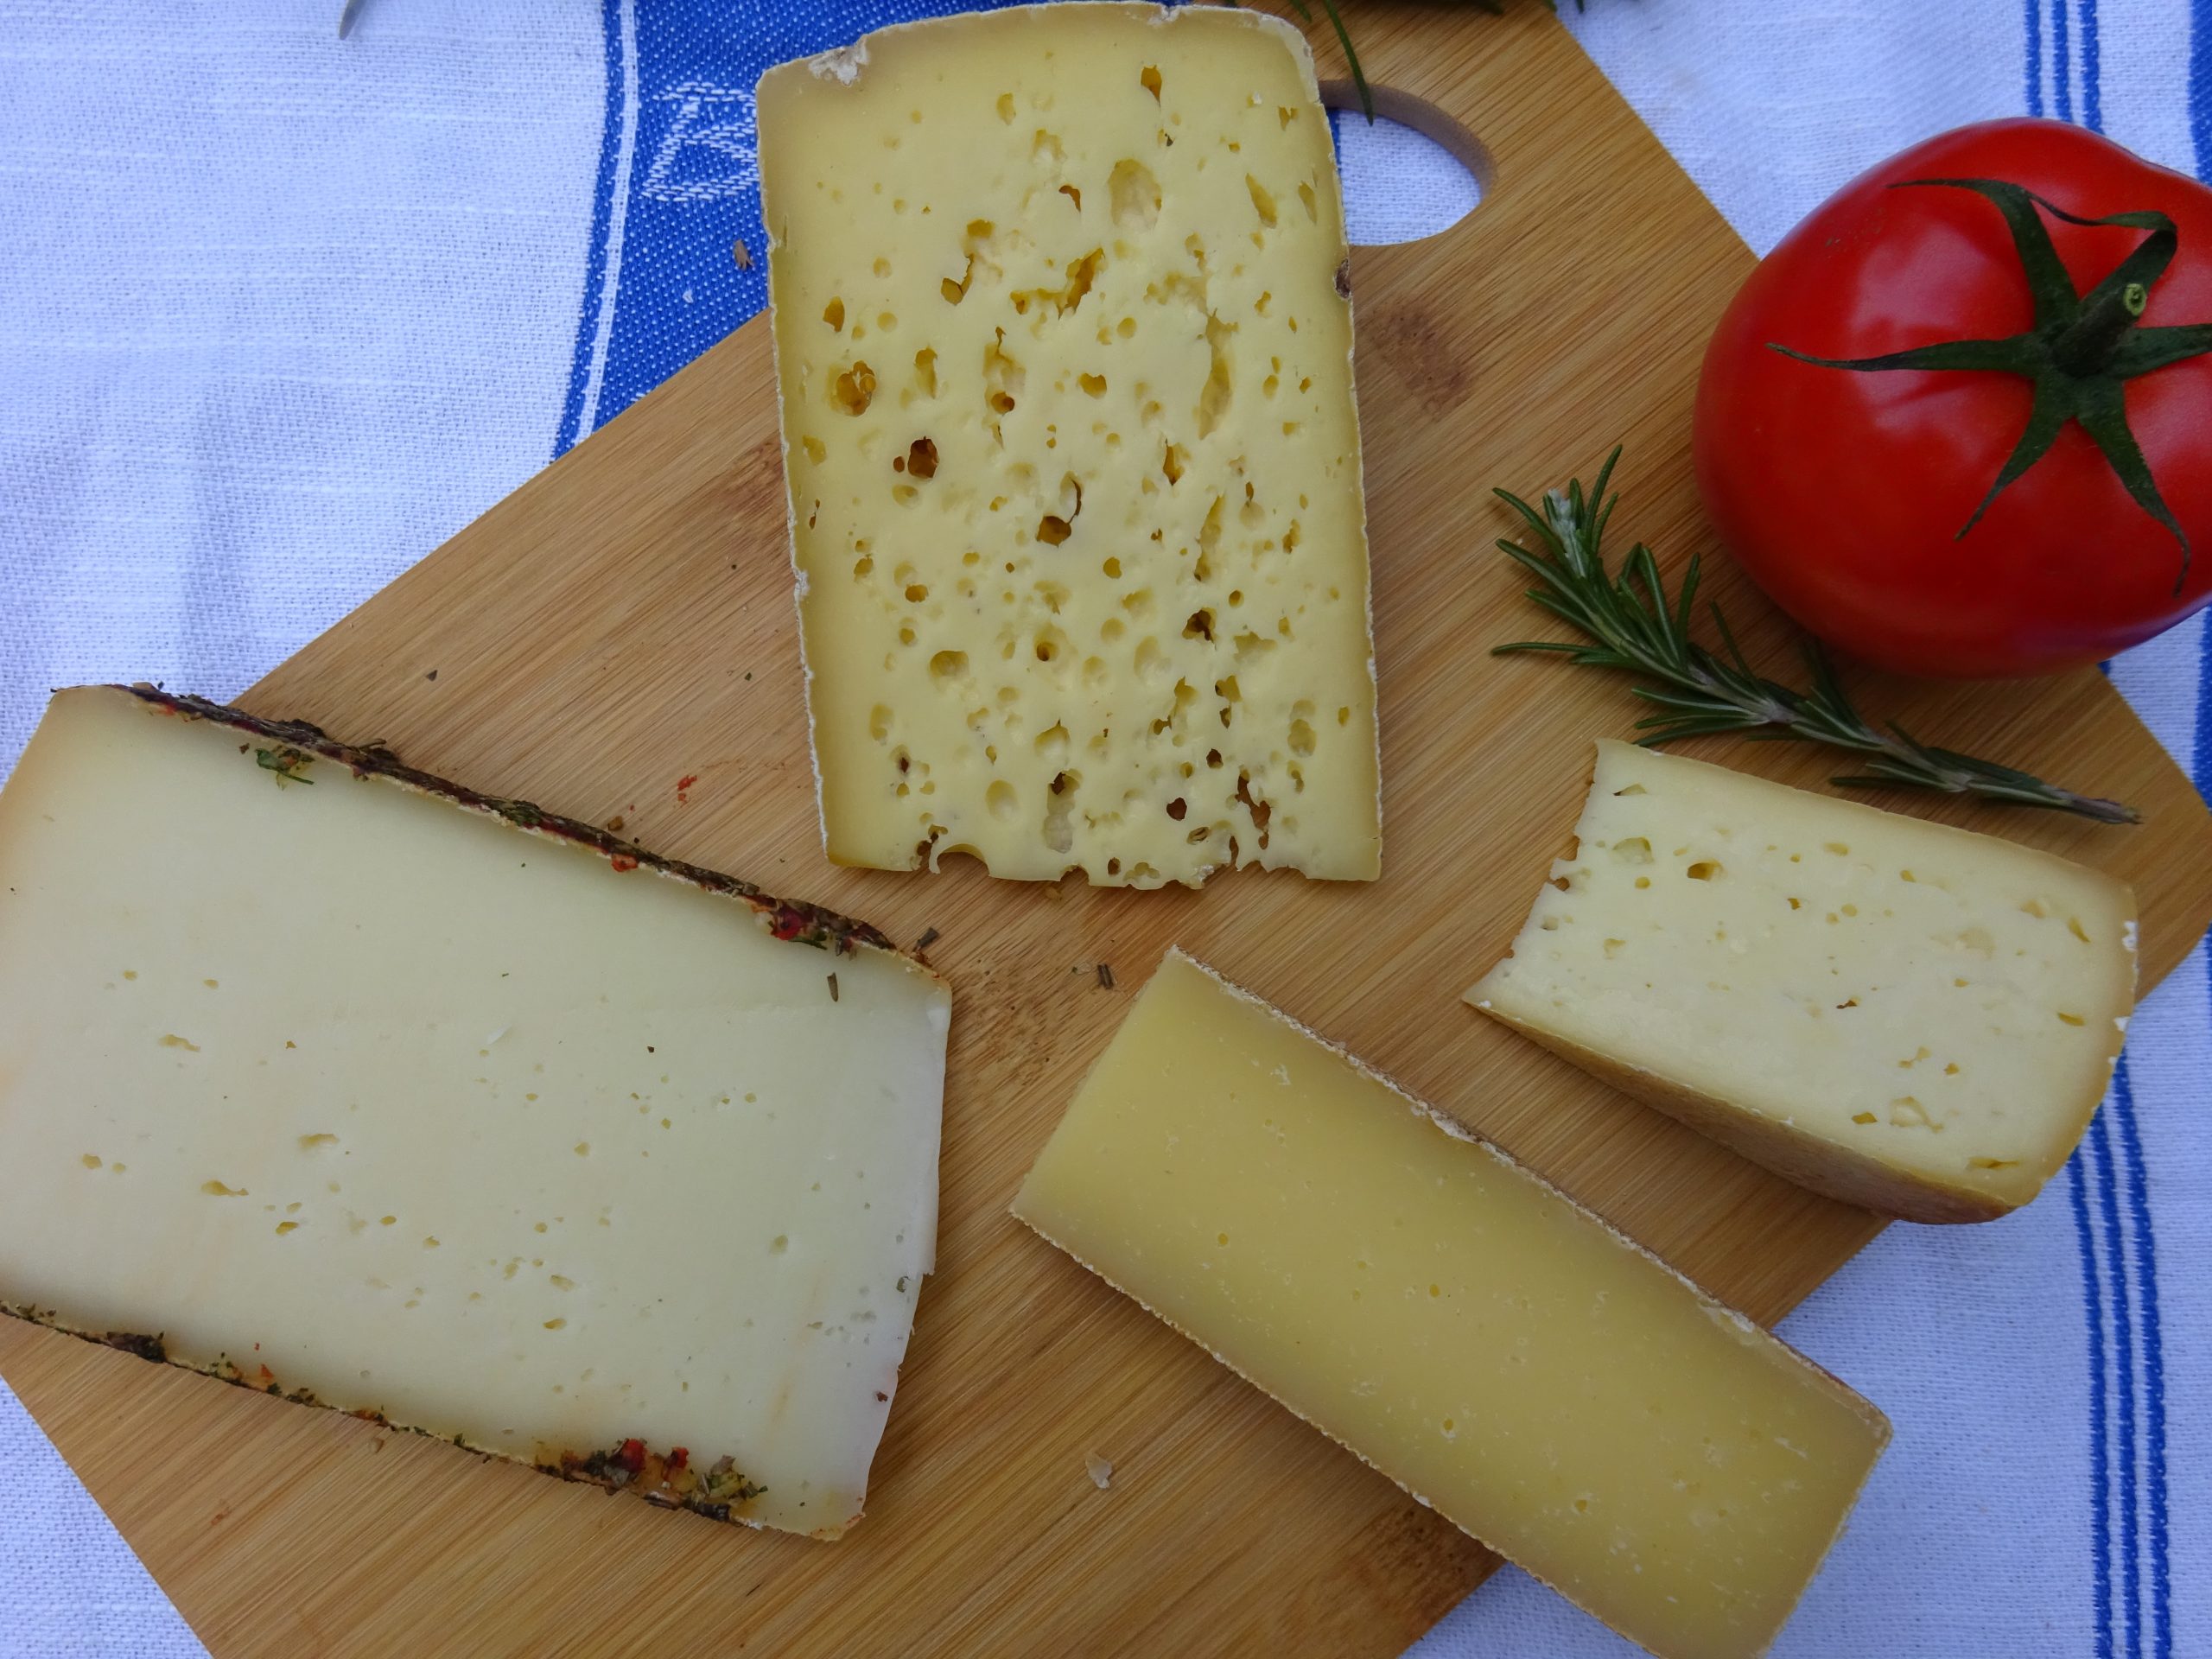 Melcherhof – mehr Käse geht fast nicht